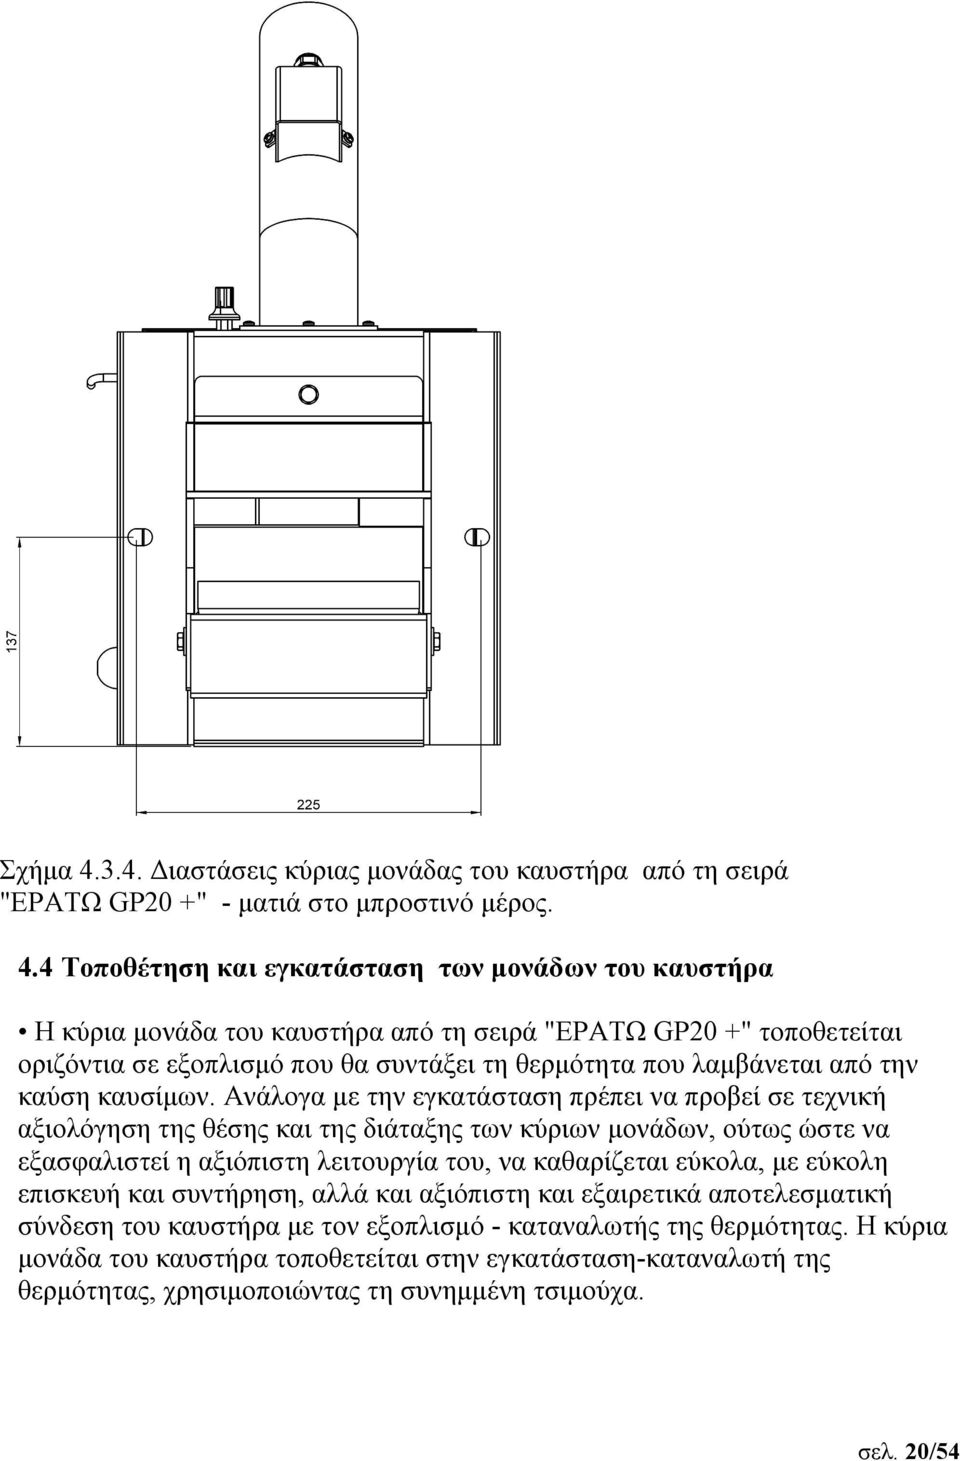 4 Τοποθέτηση και εγκατάσταση των μονάδων του καυστήρα Η κύρια μονάδα του καυστήρα από τη σειρά "ΕΡΑΤΩ GP20 +" τοποθετείται οριζόντια σε εξοπλισμό που θα συντάξει τη θερμότητα που λαμβάνεται από την